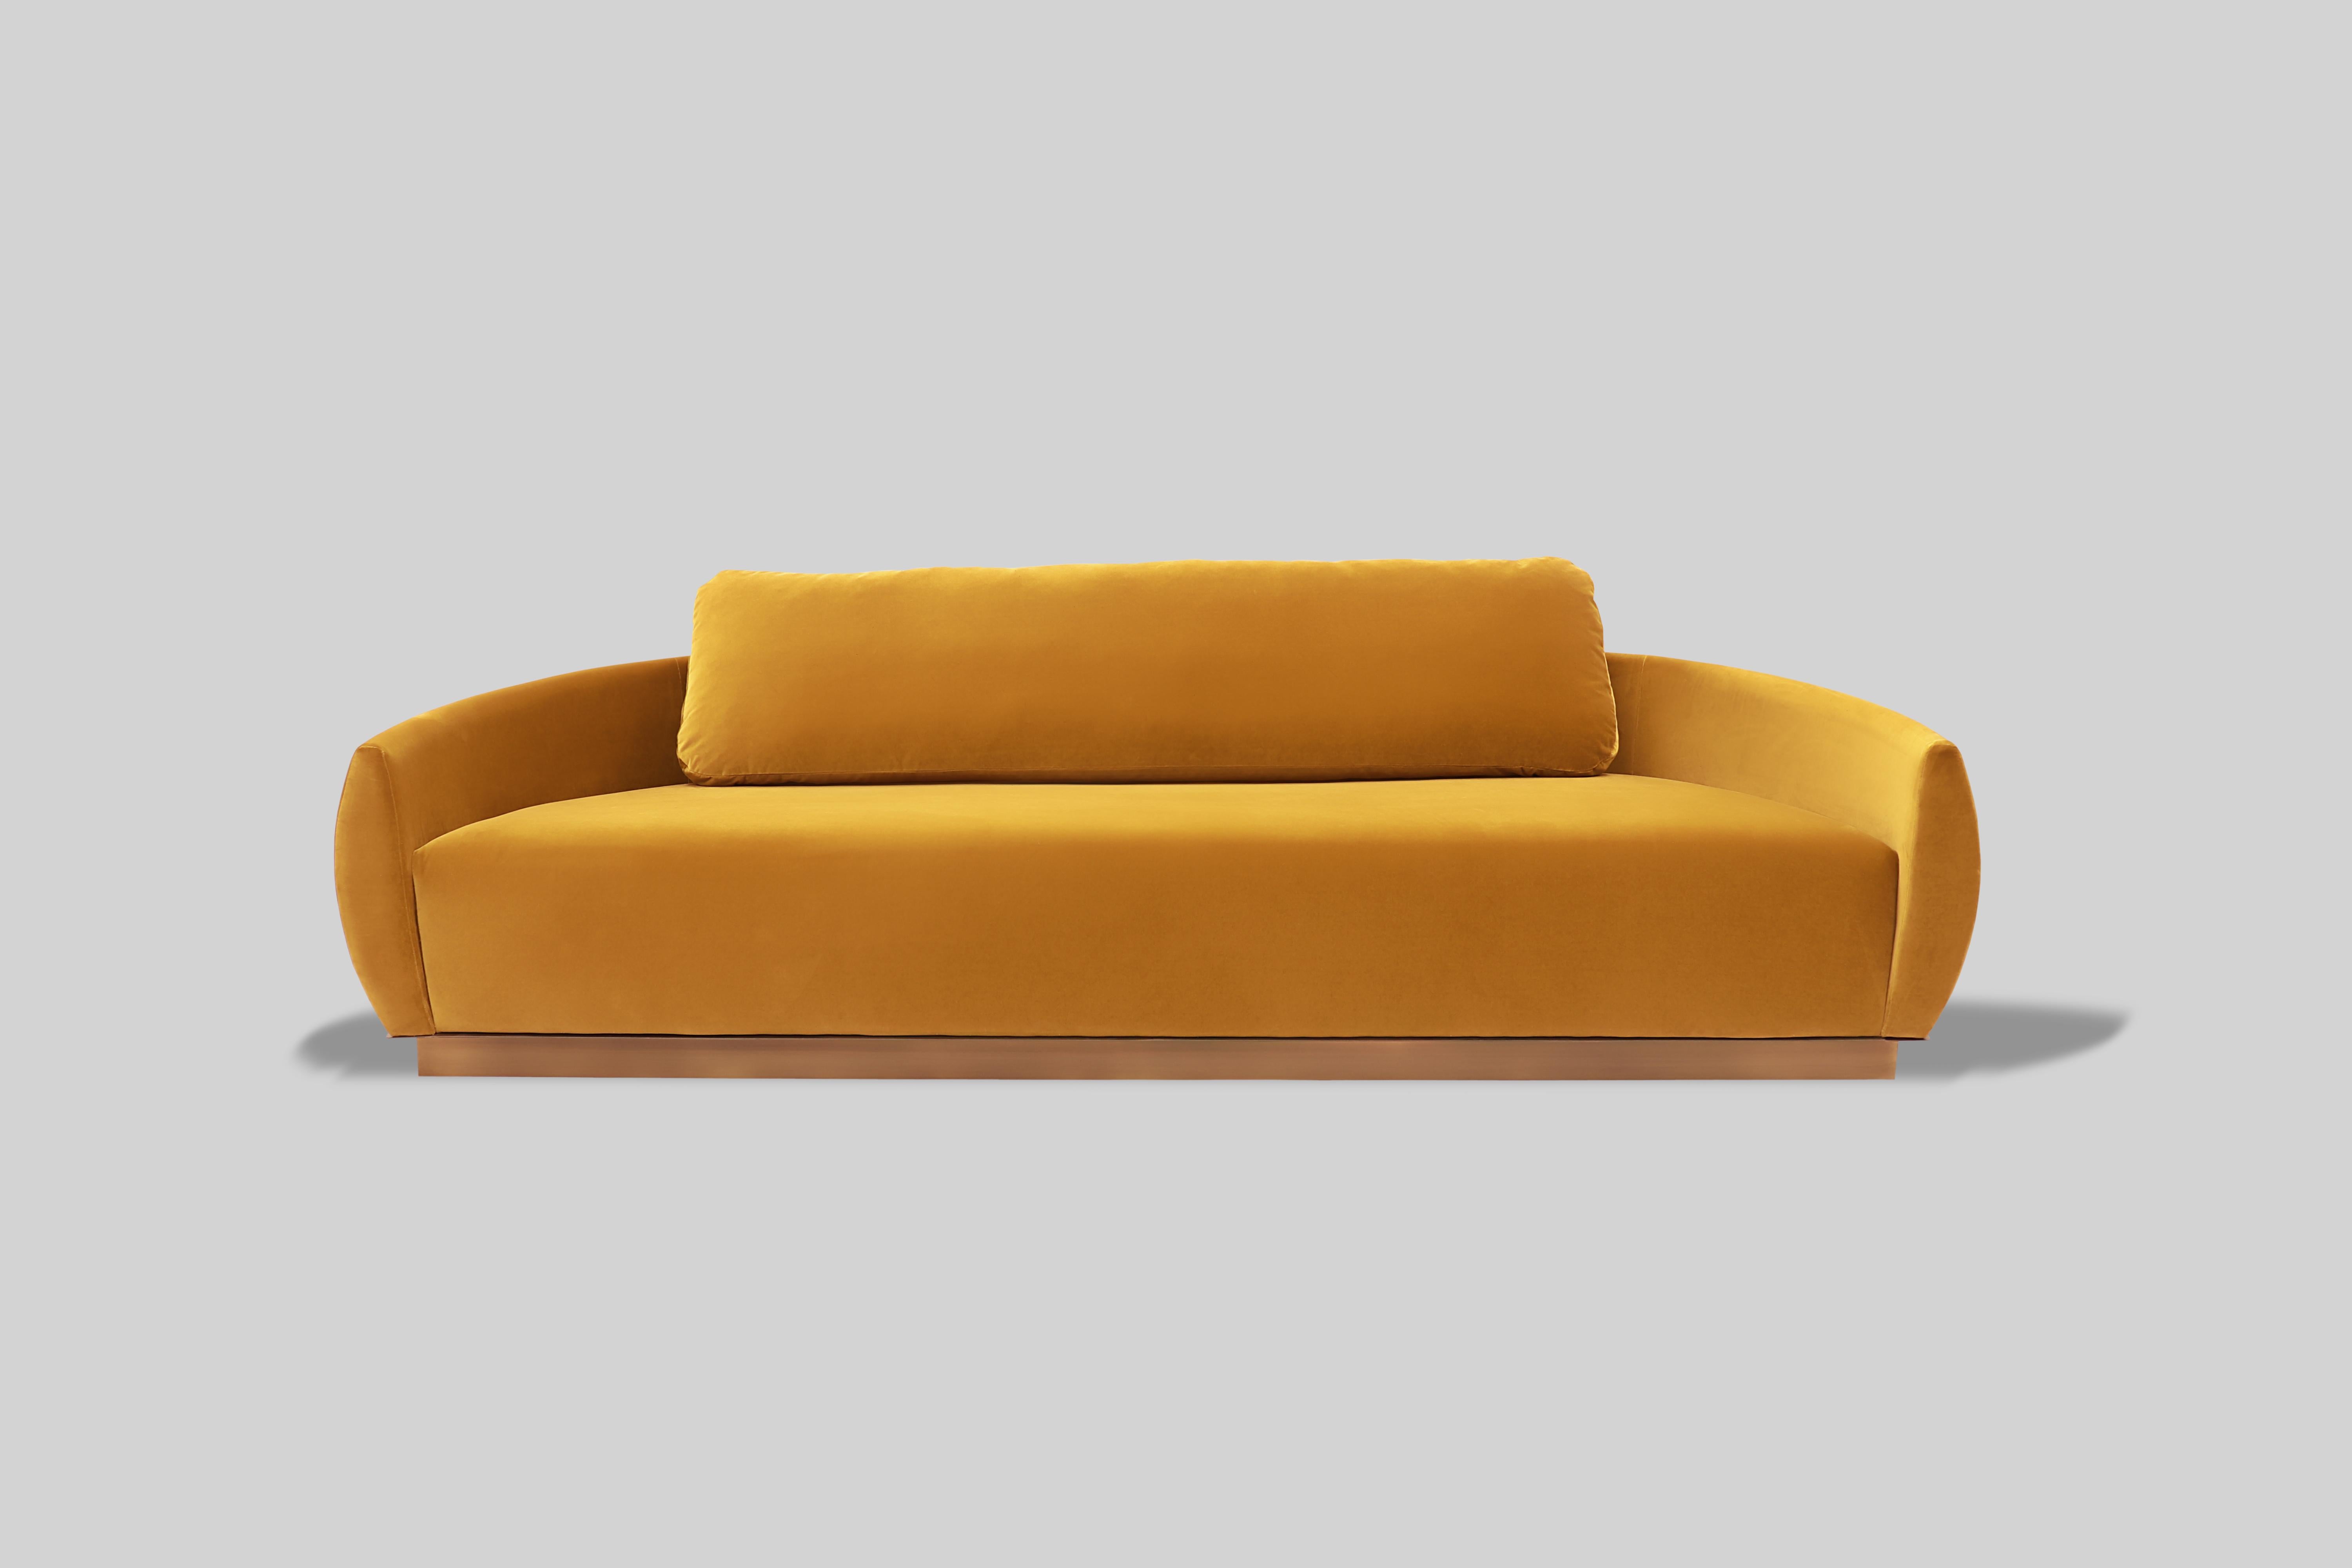 Eier-Sofa von Atra Design
Abmessungen: T 250 x B 956 x H 62,4 cm.
MATERIALIEN: Messing und Samtstoffpolsterung.

Verschiedene Stoffoptionen verfügbar. Bitte kontaktieren Sie uns. 

Atra Design
Wir sind Atra, eine Möbelmarke, die von Atra form A,